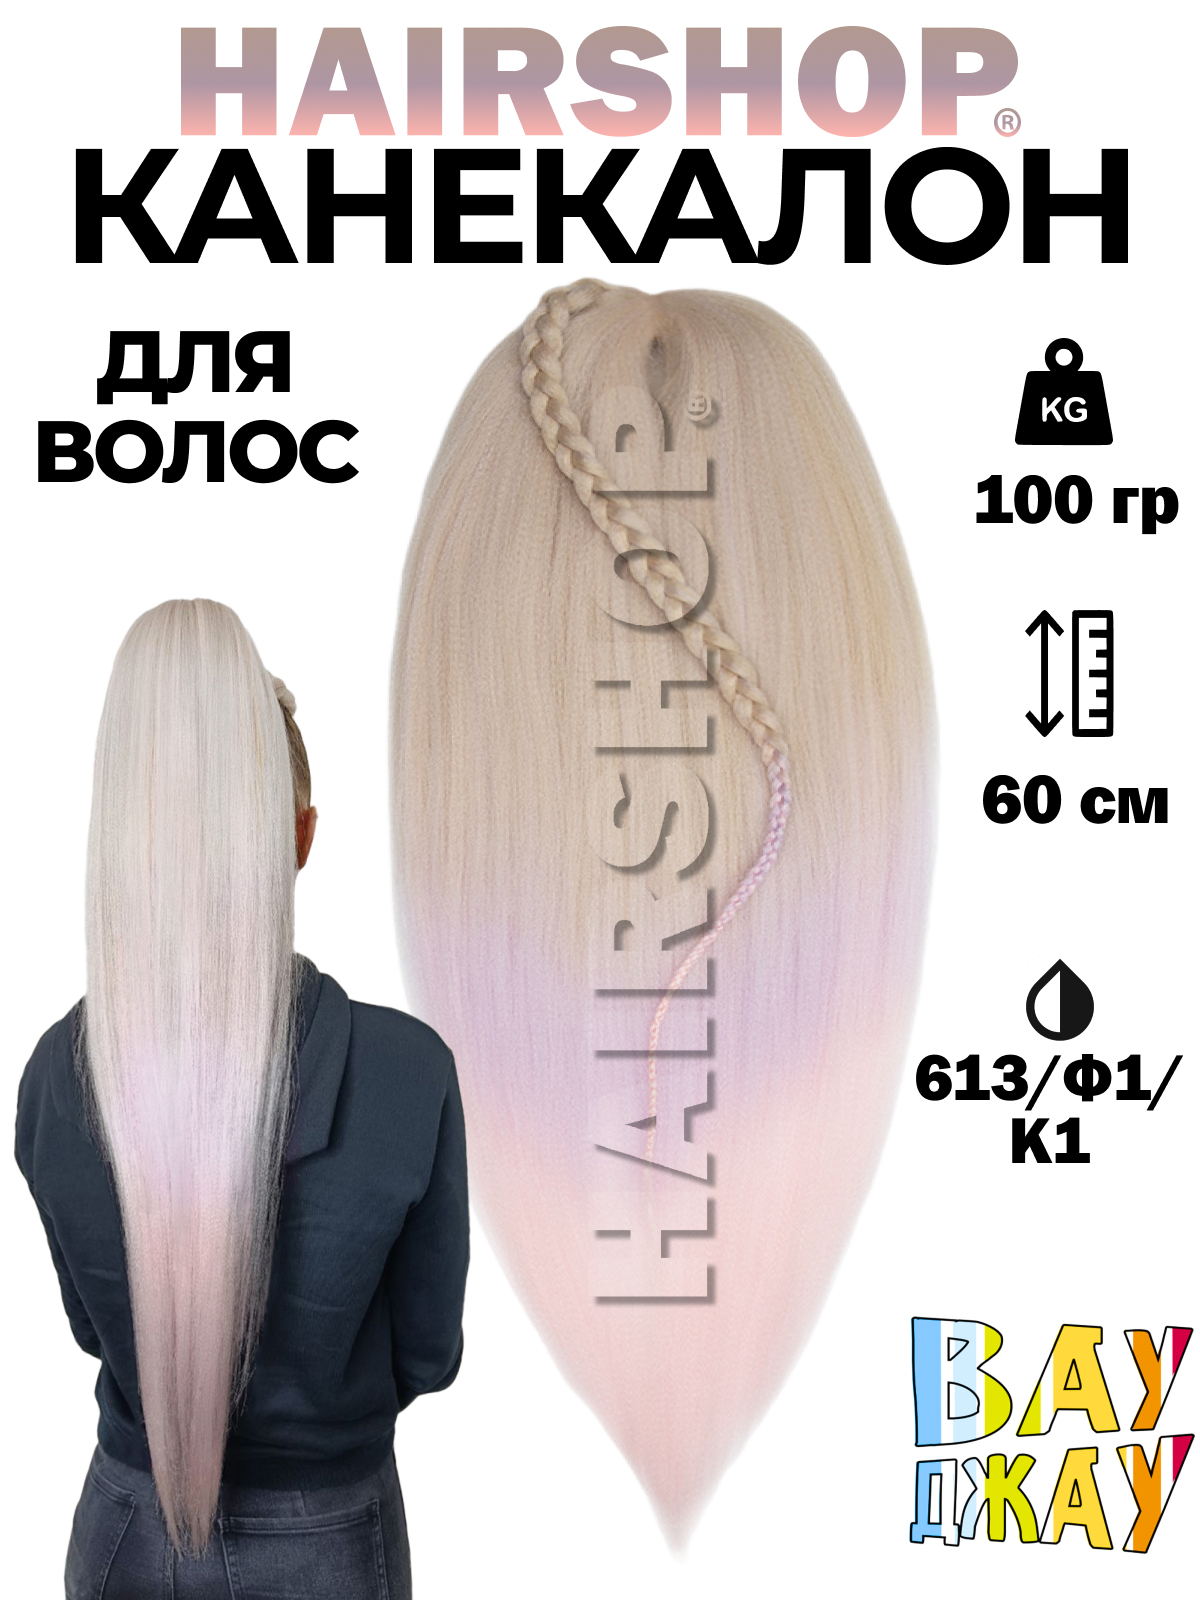 Канекалон HAIRSHOP Вау Джау 613-Ф1-К1 1,3м 100г Блонд, Светлый фиолетовый, Нежно-розовый манекен для причесок курс по обучению плетению кос 10 уроков линком мп 1